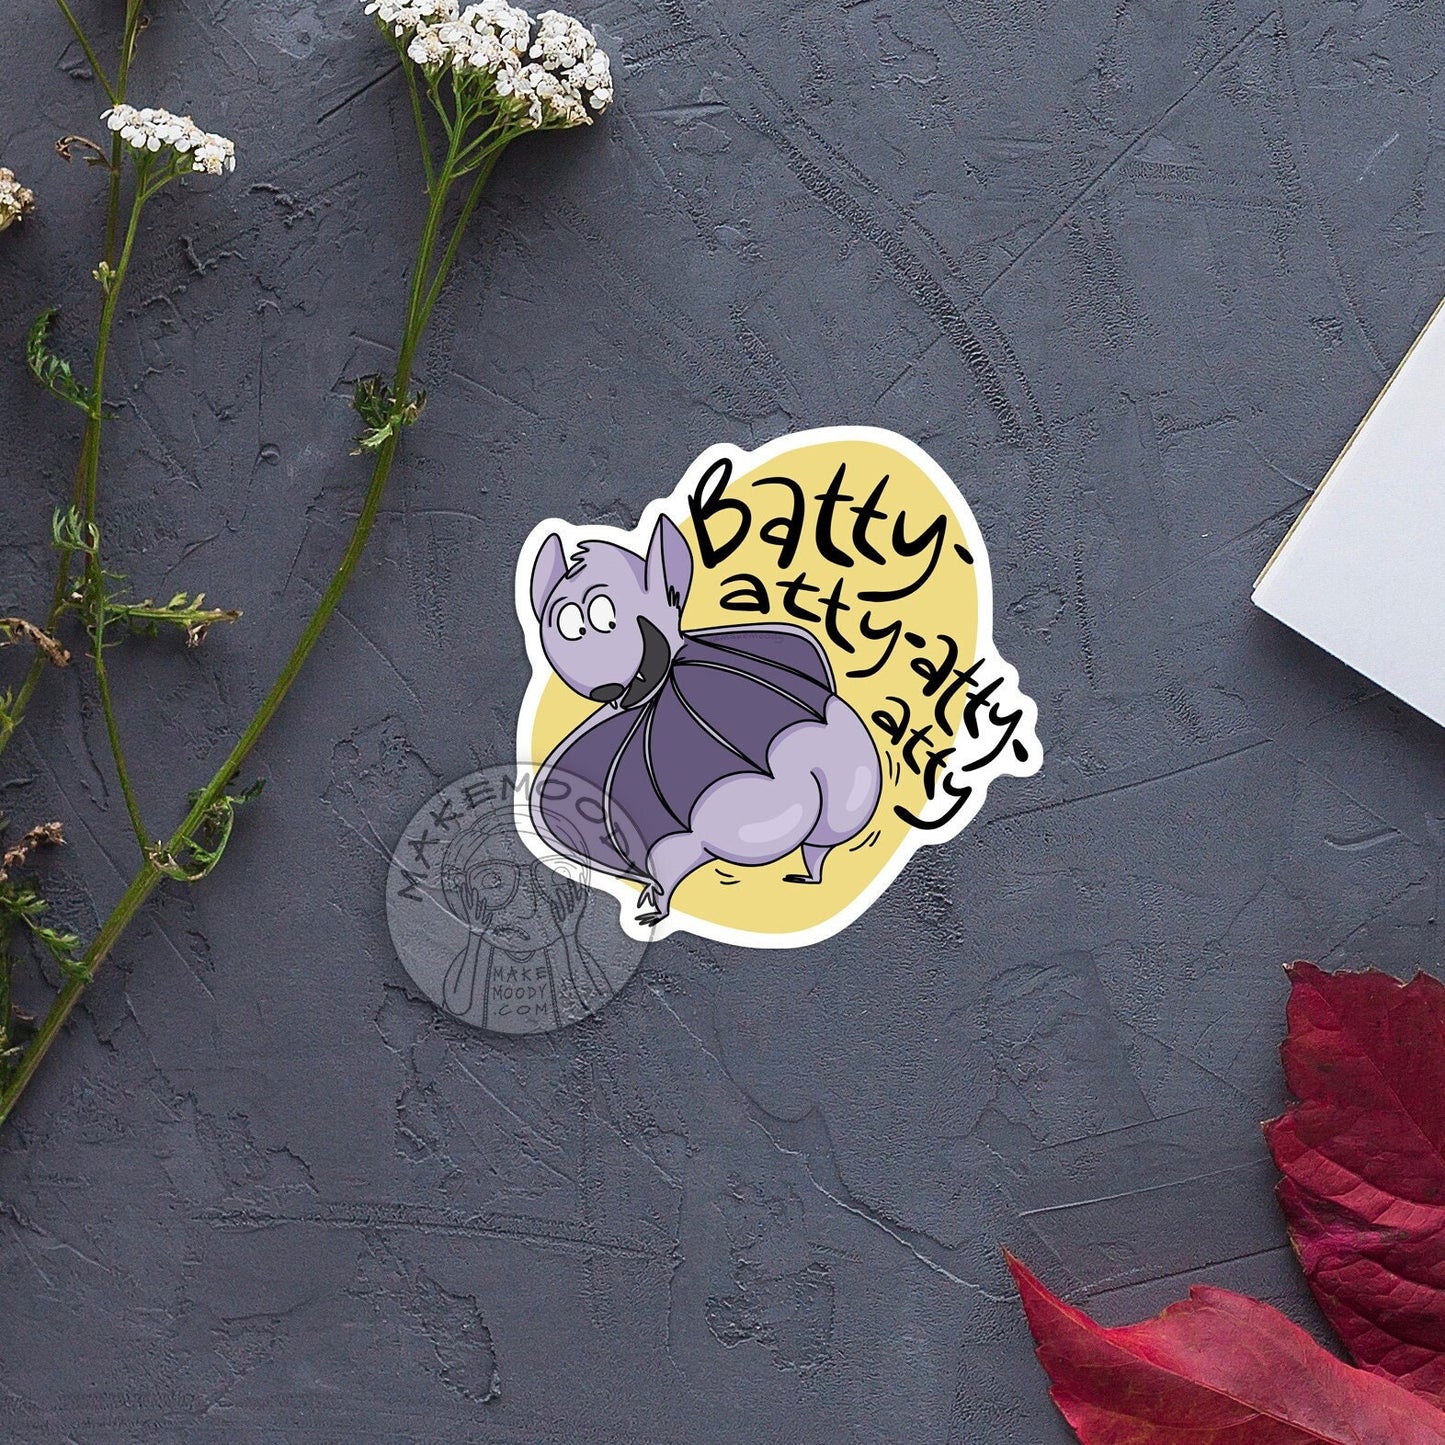 Bat Twerking STICKER - Vinyl Decal Sticker - Bat Sticker, Spoopy Bat Sticker, Stallion Sticker, Bodyodyody Sticker, Twerking Sticker